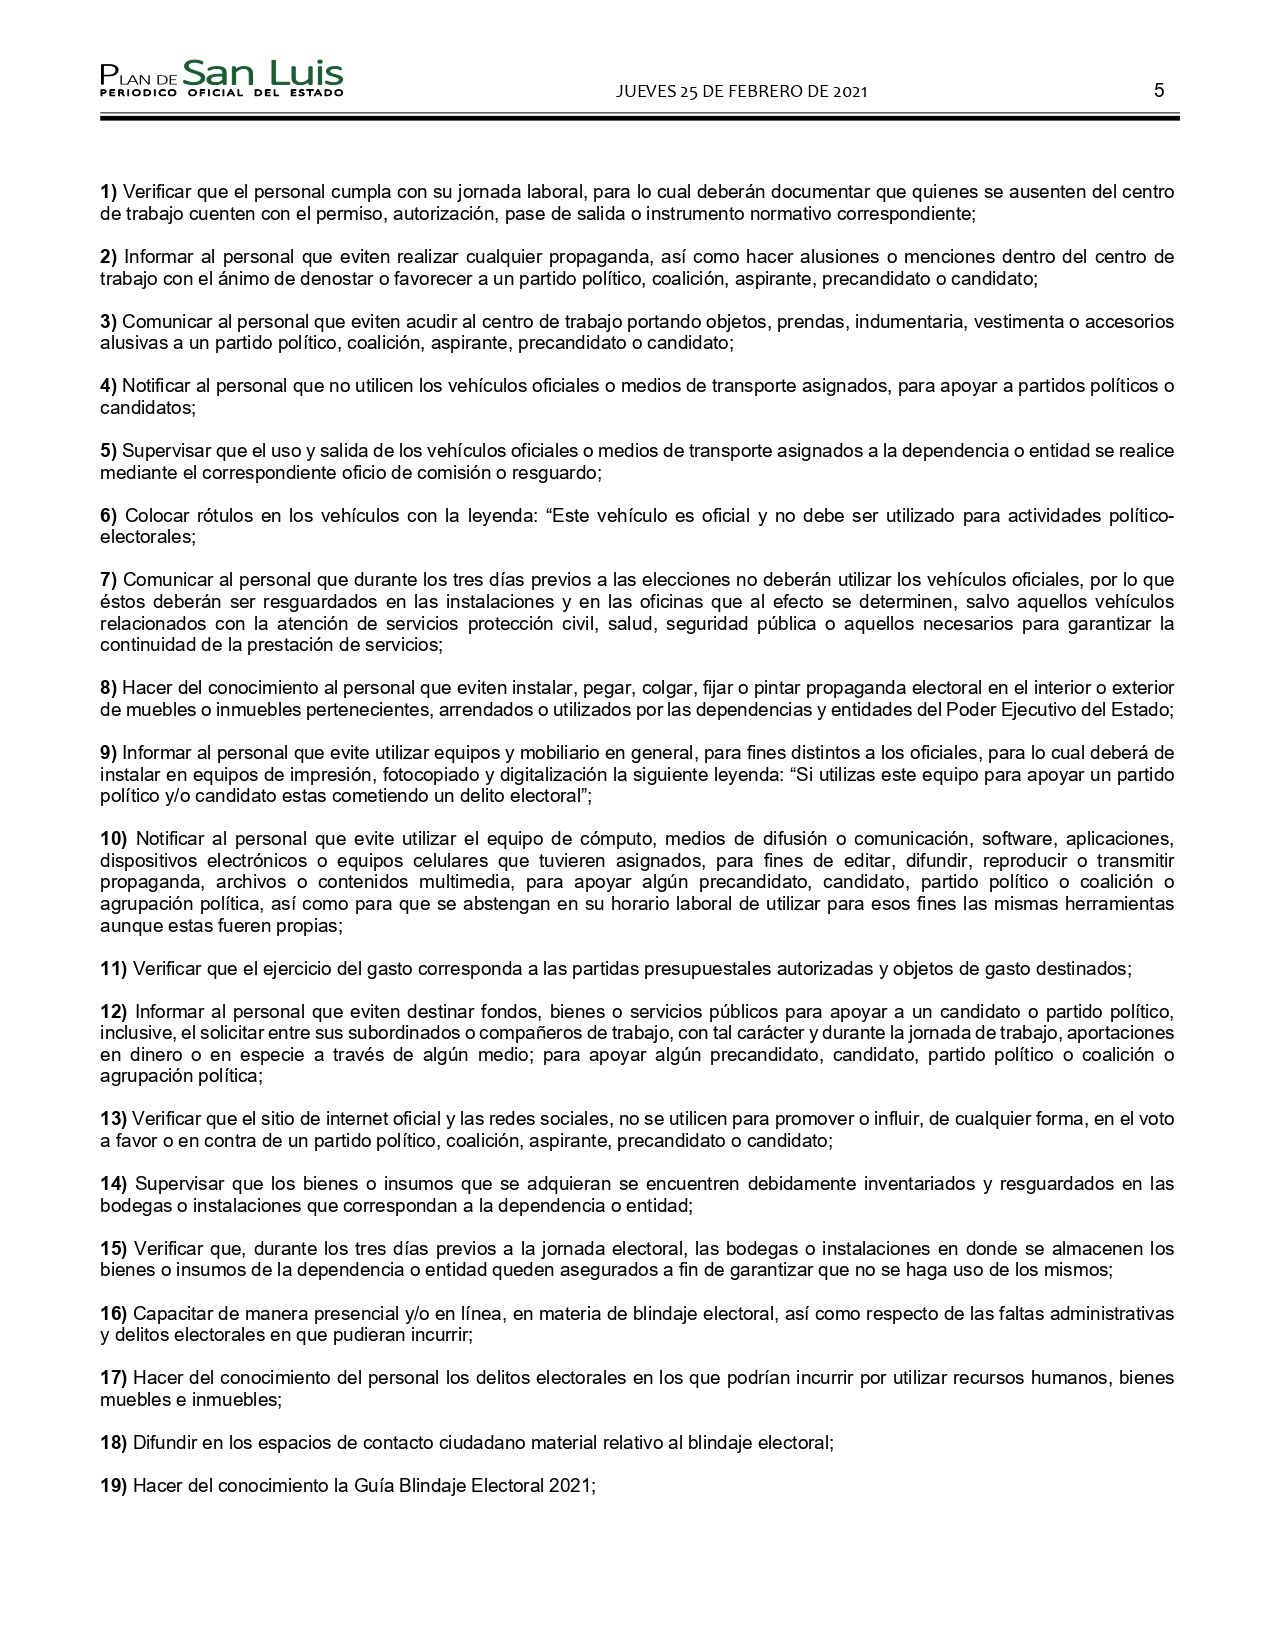 SLP ACUERDO PARA LA PREVENCION DE FALTAS DE LOS SERVIDORES PUBLICOS (25-FEB-2021) (1)_pages-to-jpg-0005.jpg